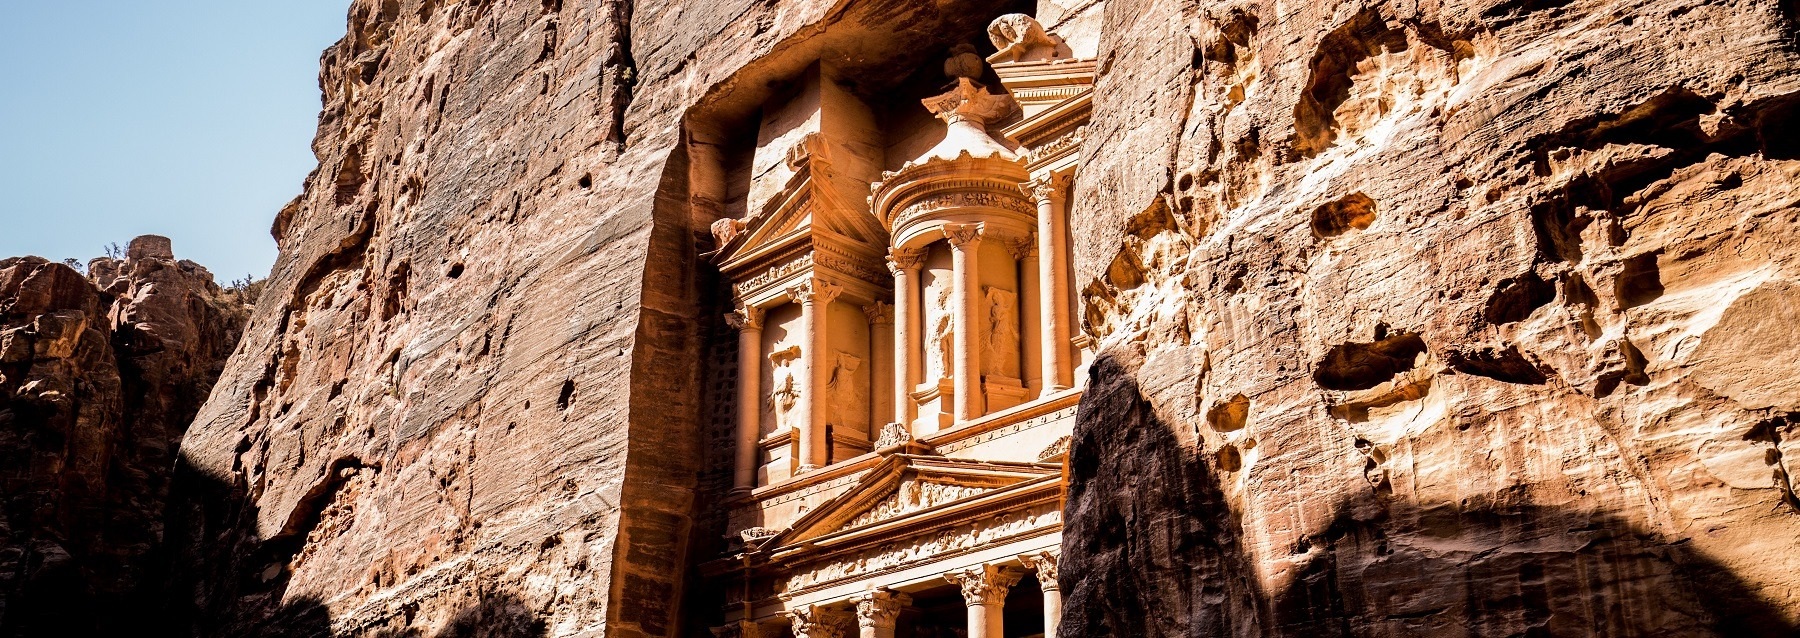 visit Jordan- Visit Petra- Dead sea Jordan - travel agency jordan